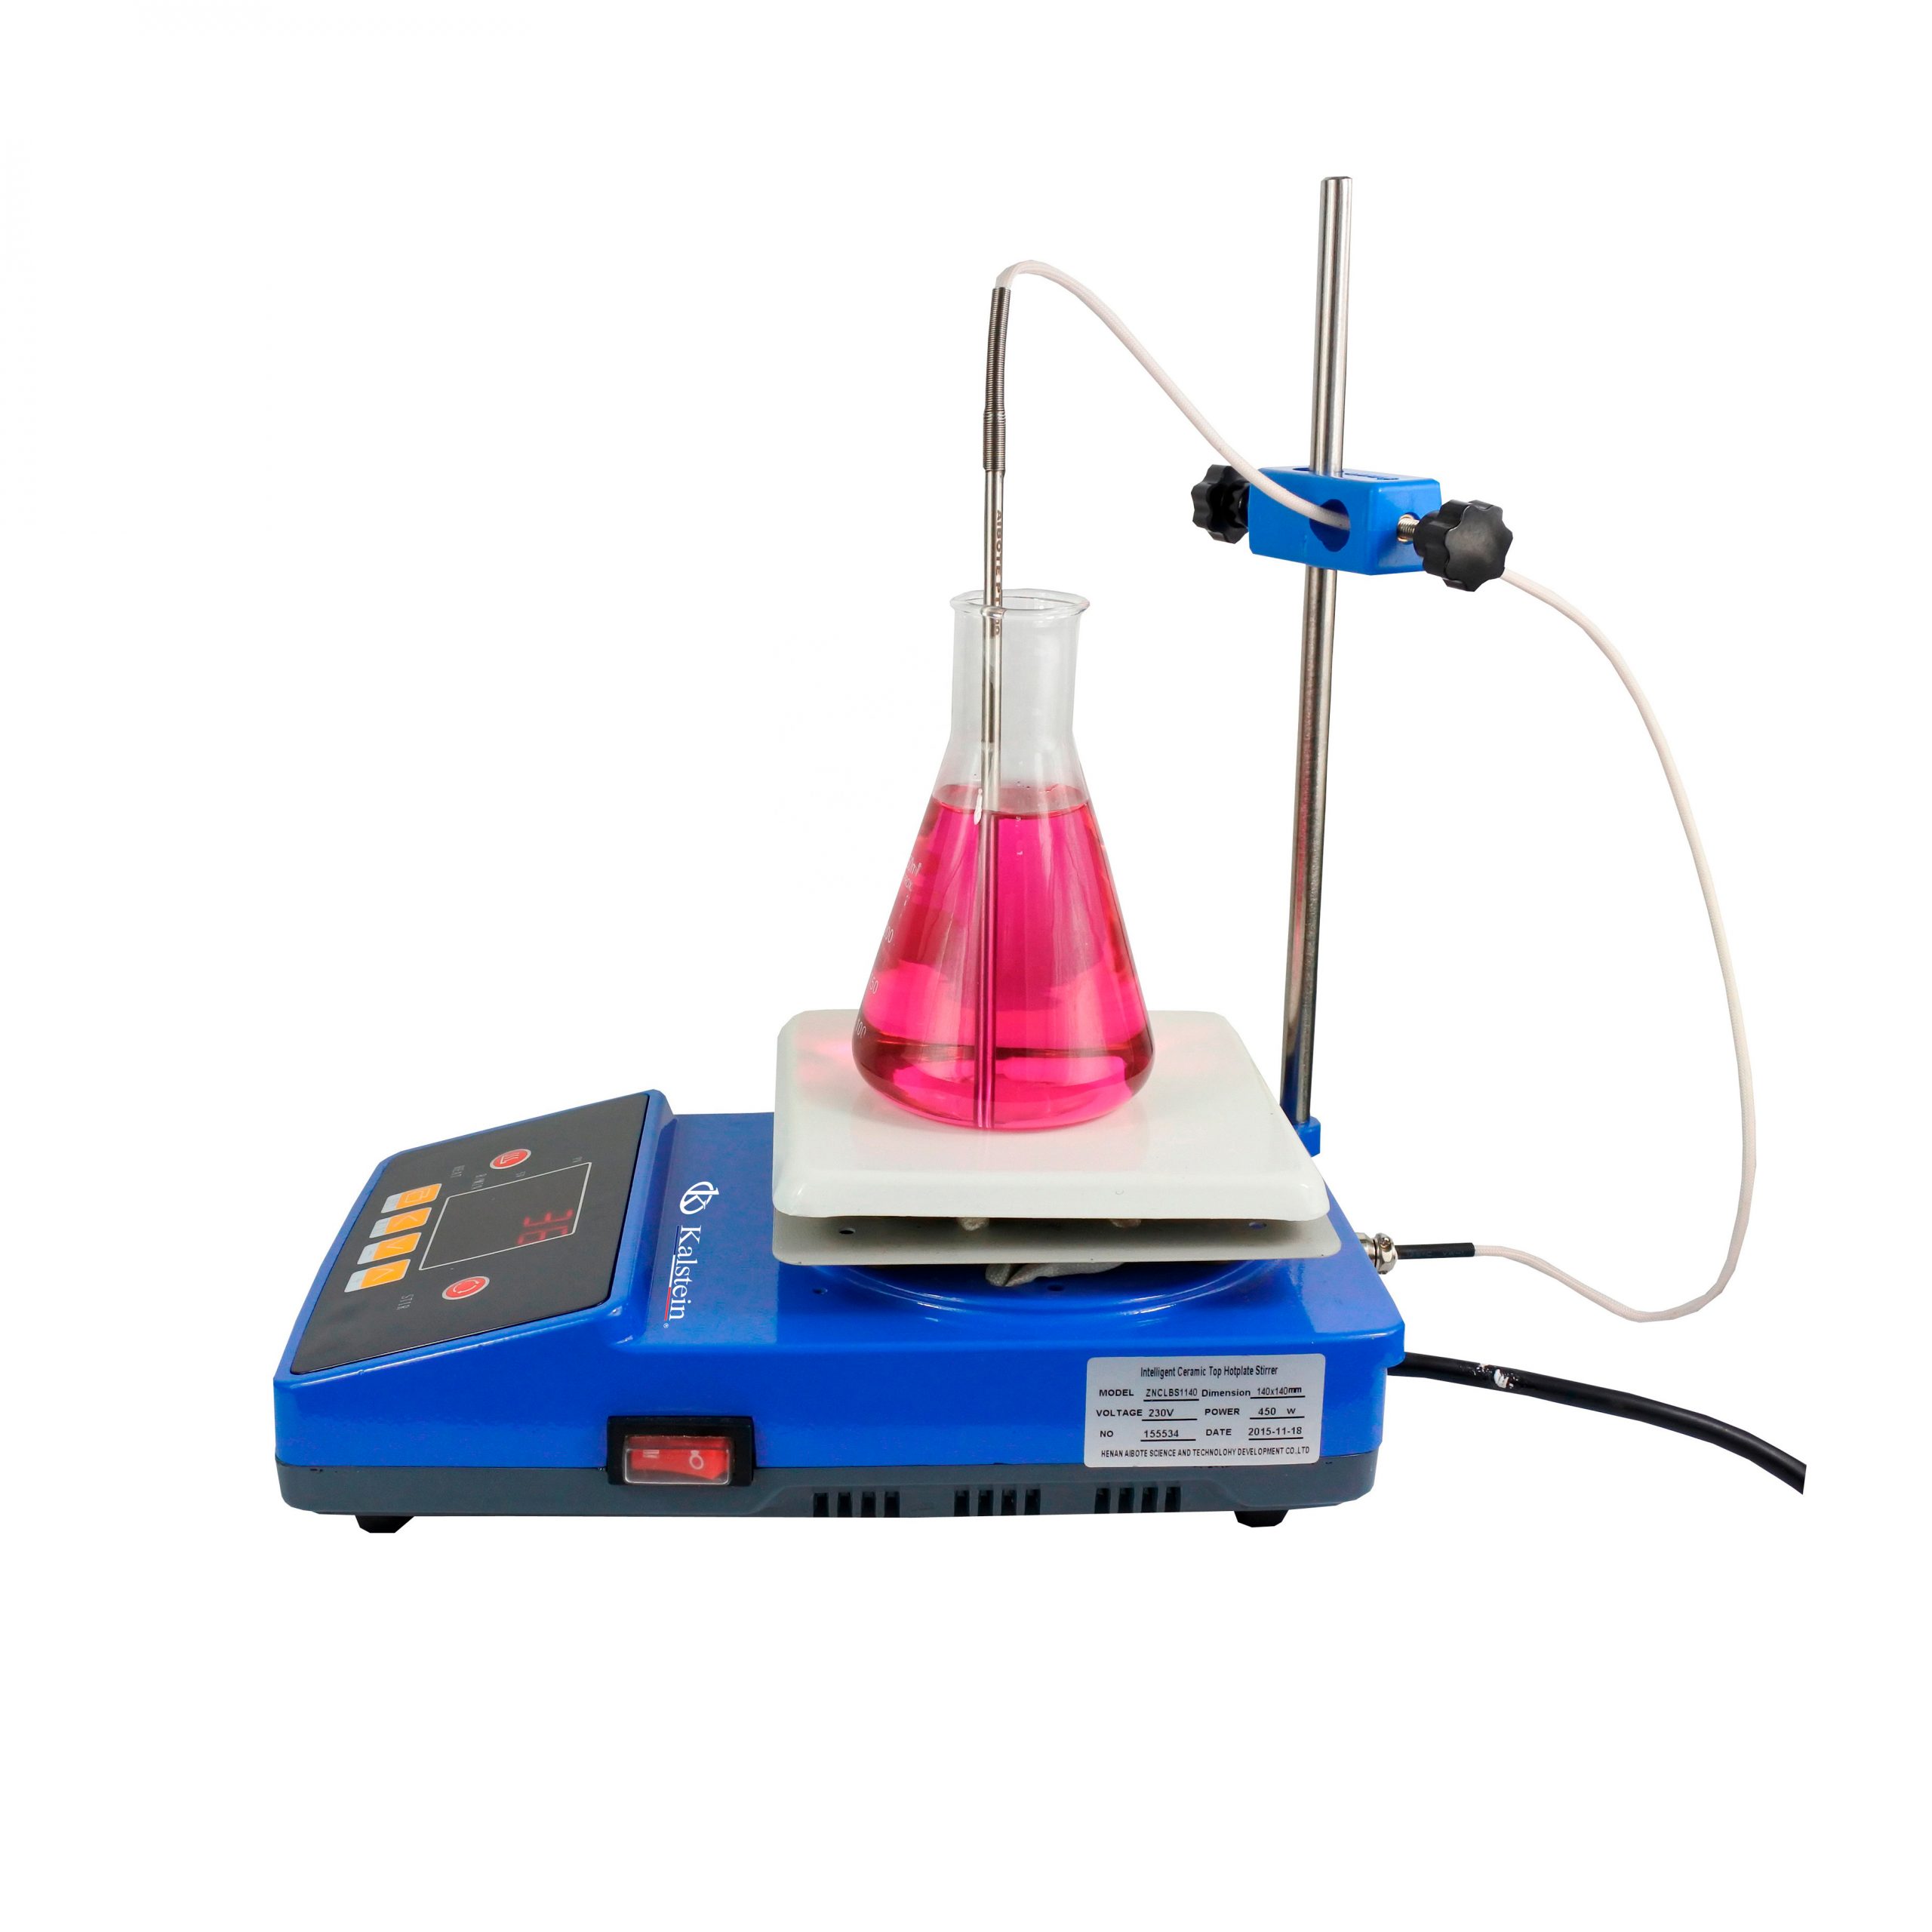 85-2 agitateur magnétique de mélangeur de plaque chauffante avec léquipement de laboratoire décole de plaque chauffante 